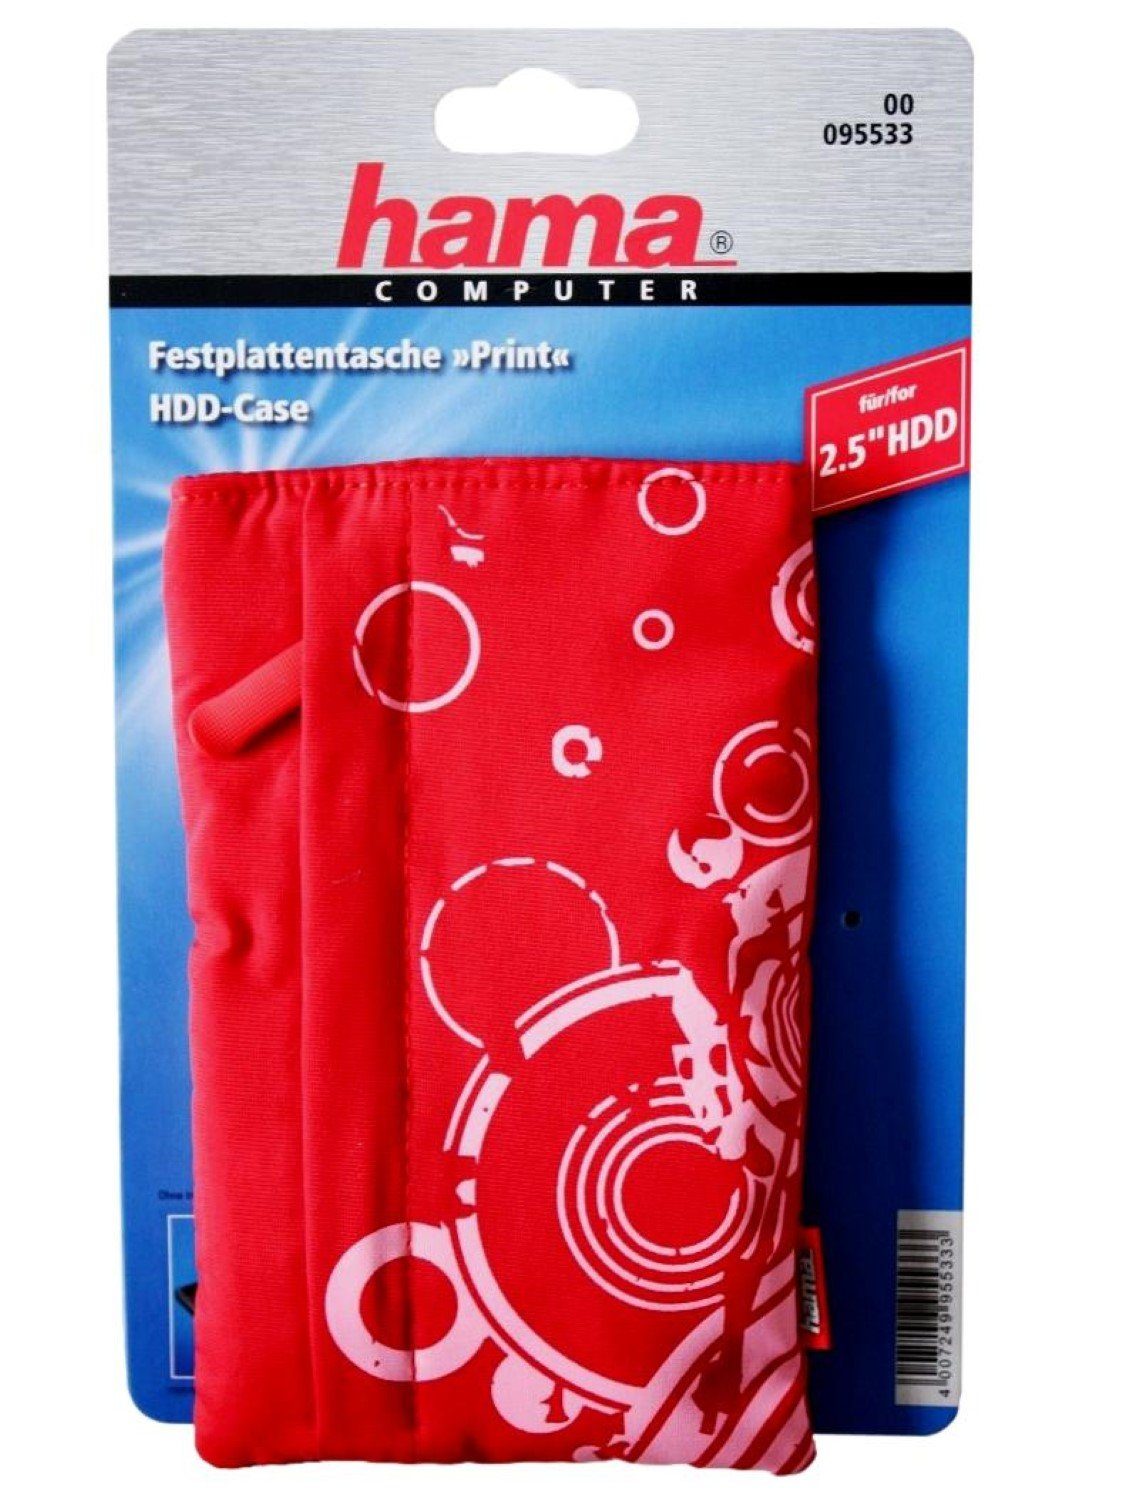 Hama Festplattentasche Tasche Print Rot Aufbewahrung Schutz-Hülle Festplatte Bag Case HDD externe 2,5\